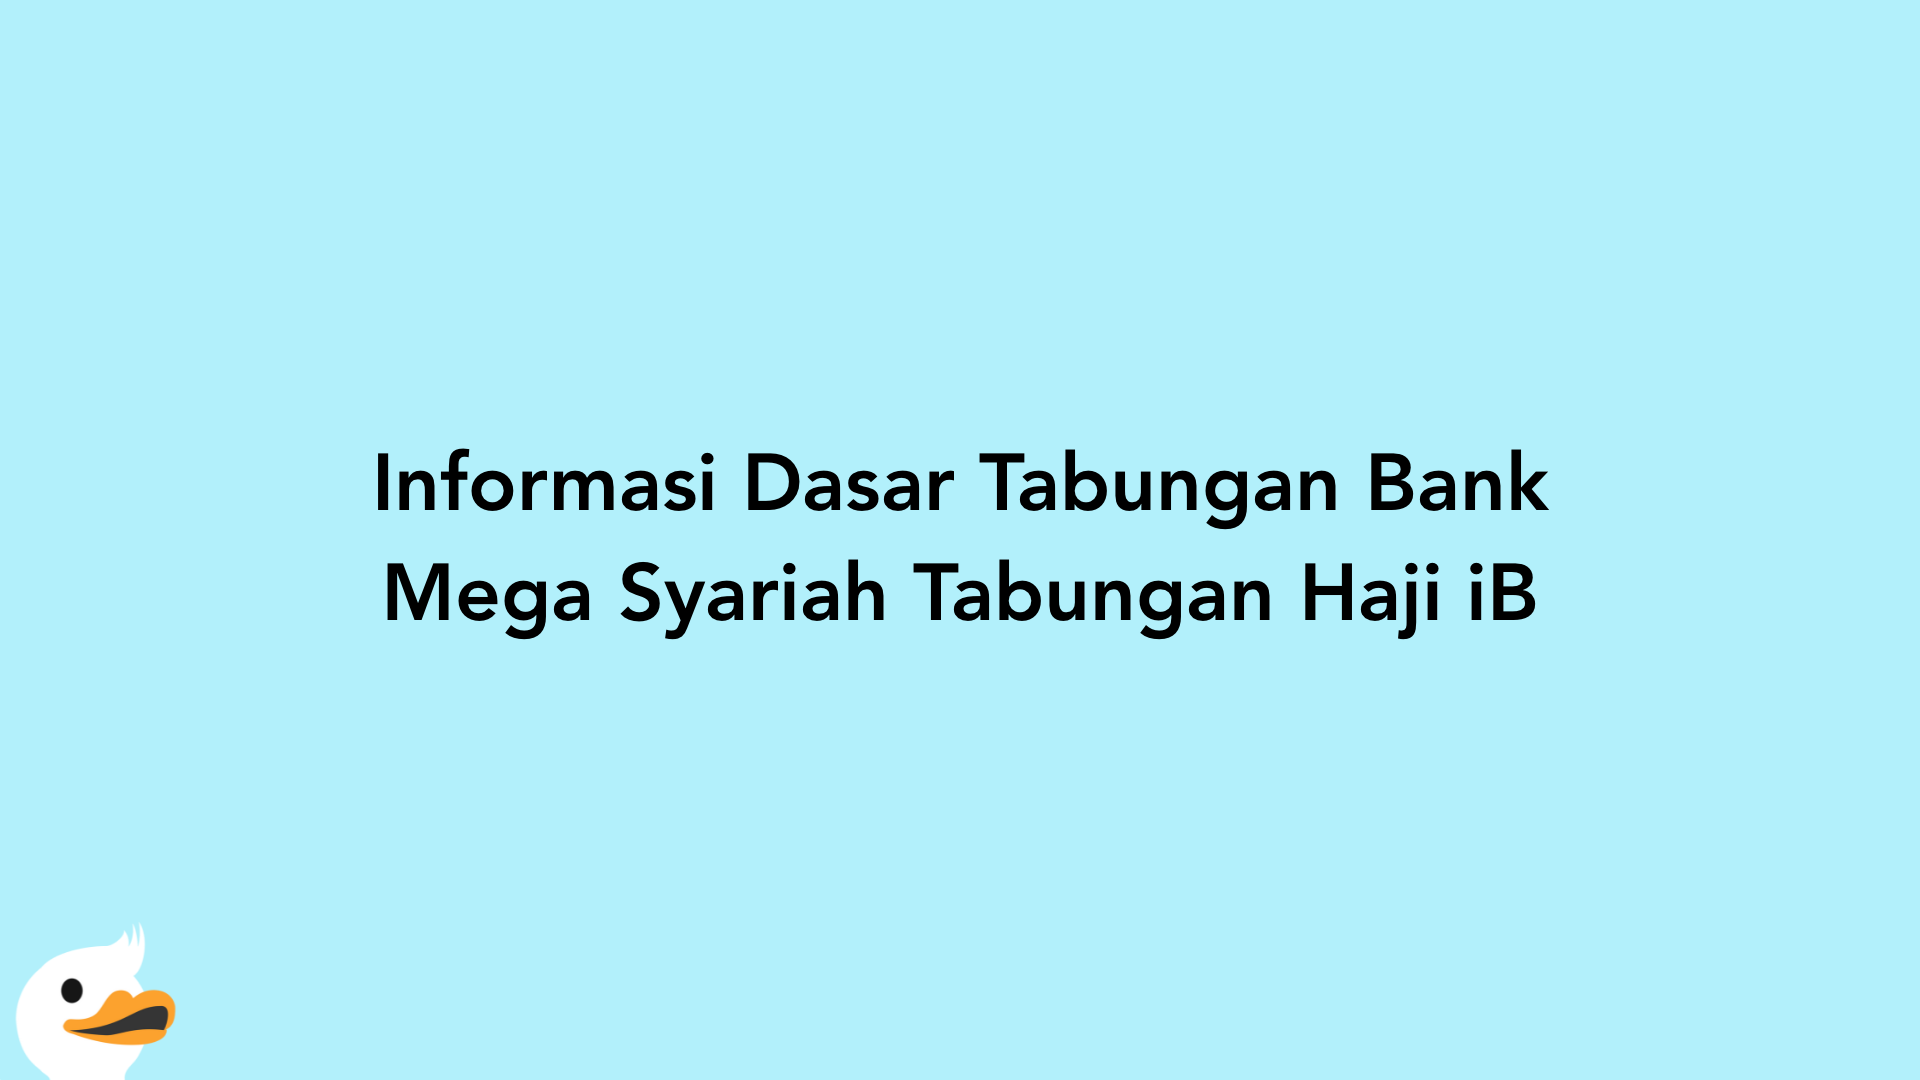 Informasi Dasar Tabungan Bank Mega Syariah Tabungan Haji iB